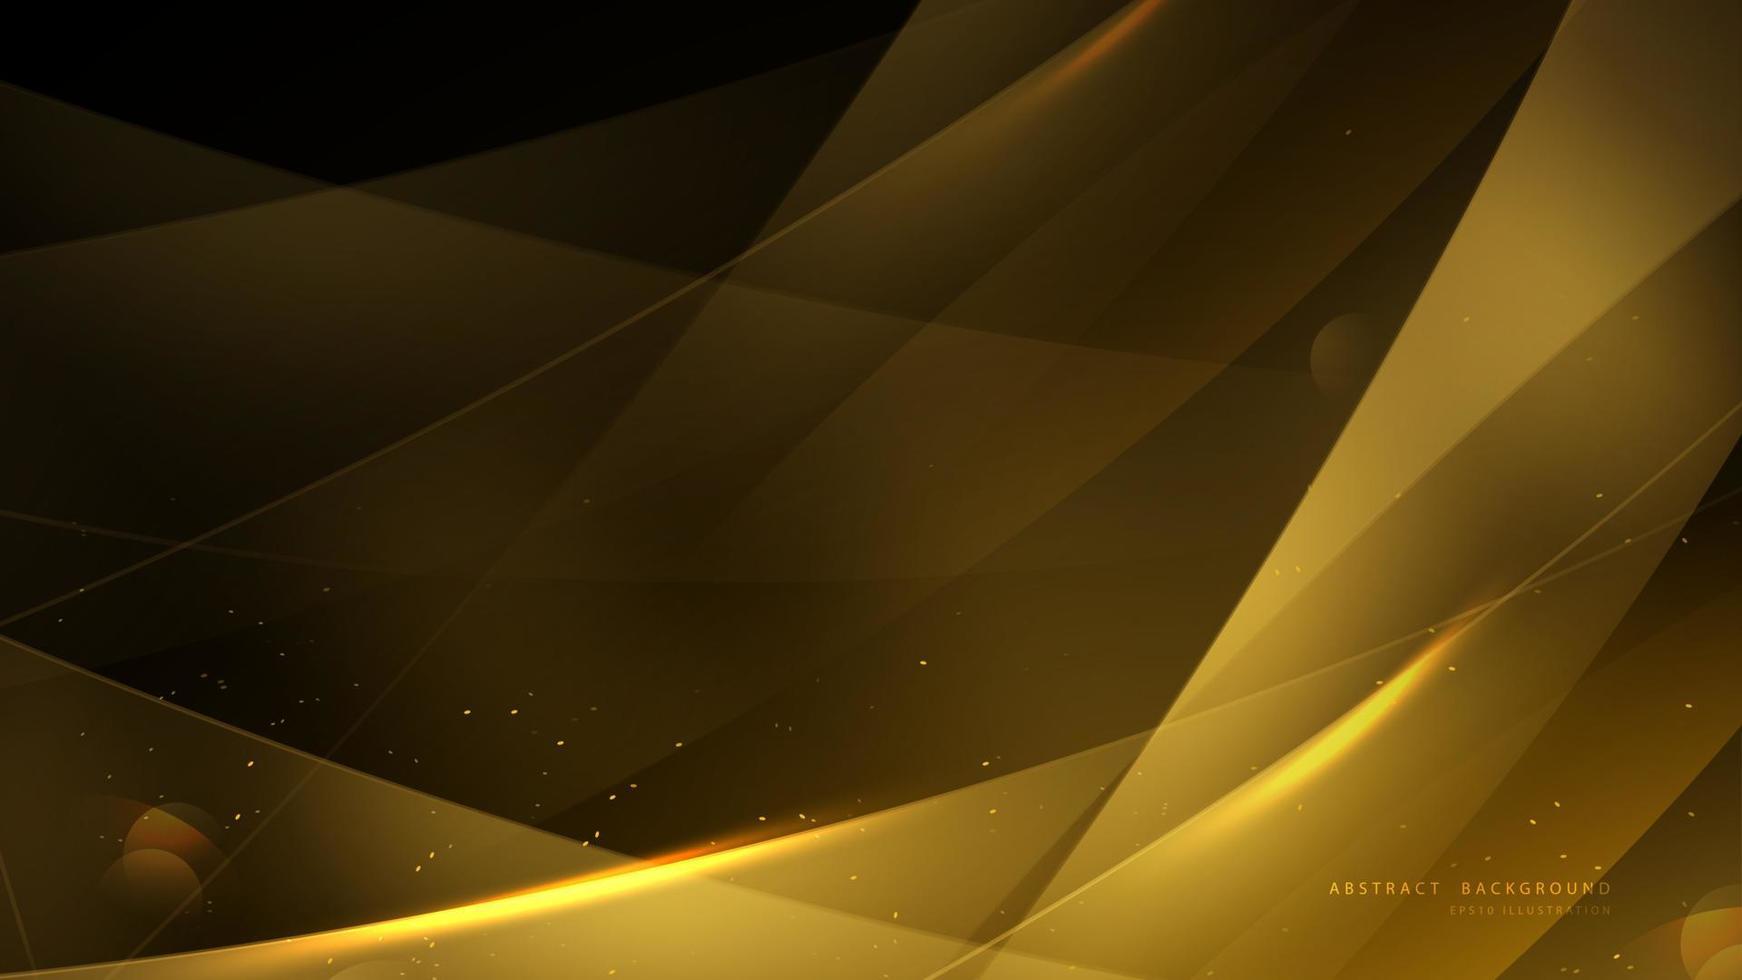 fond doré élégant avec bokeh et lumière brillante. conception abstraite de fond d'or de luxe lumineux. illustration vectorielle vecteur